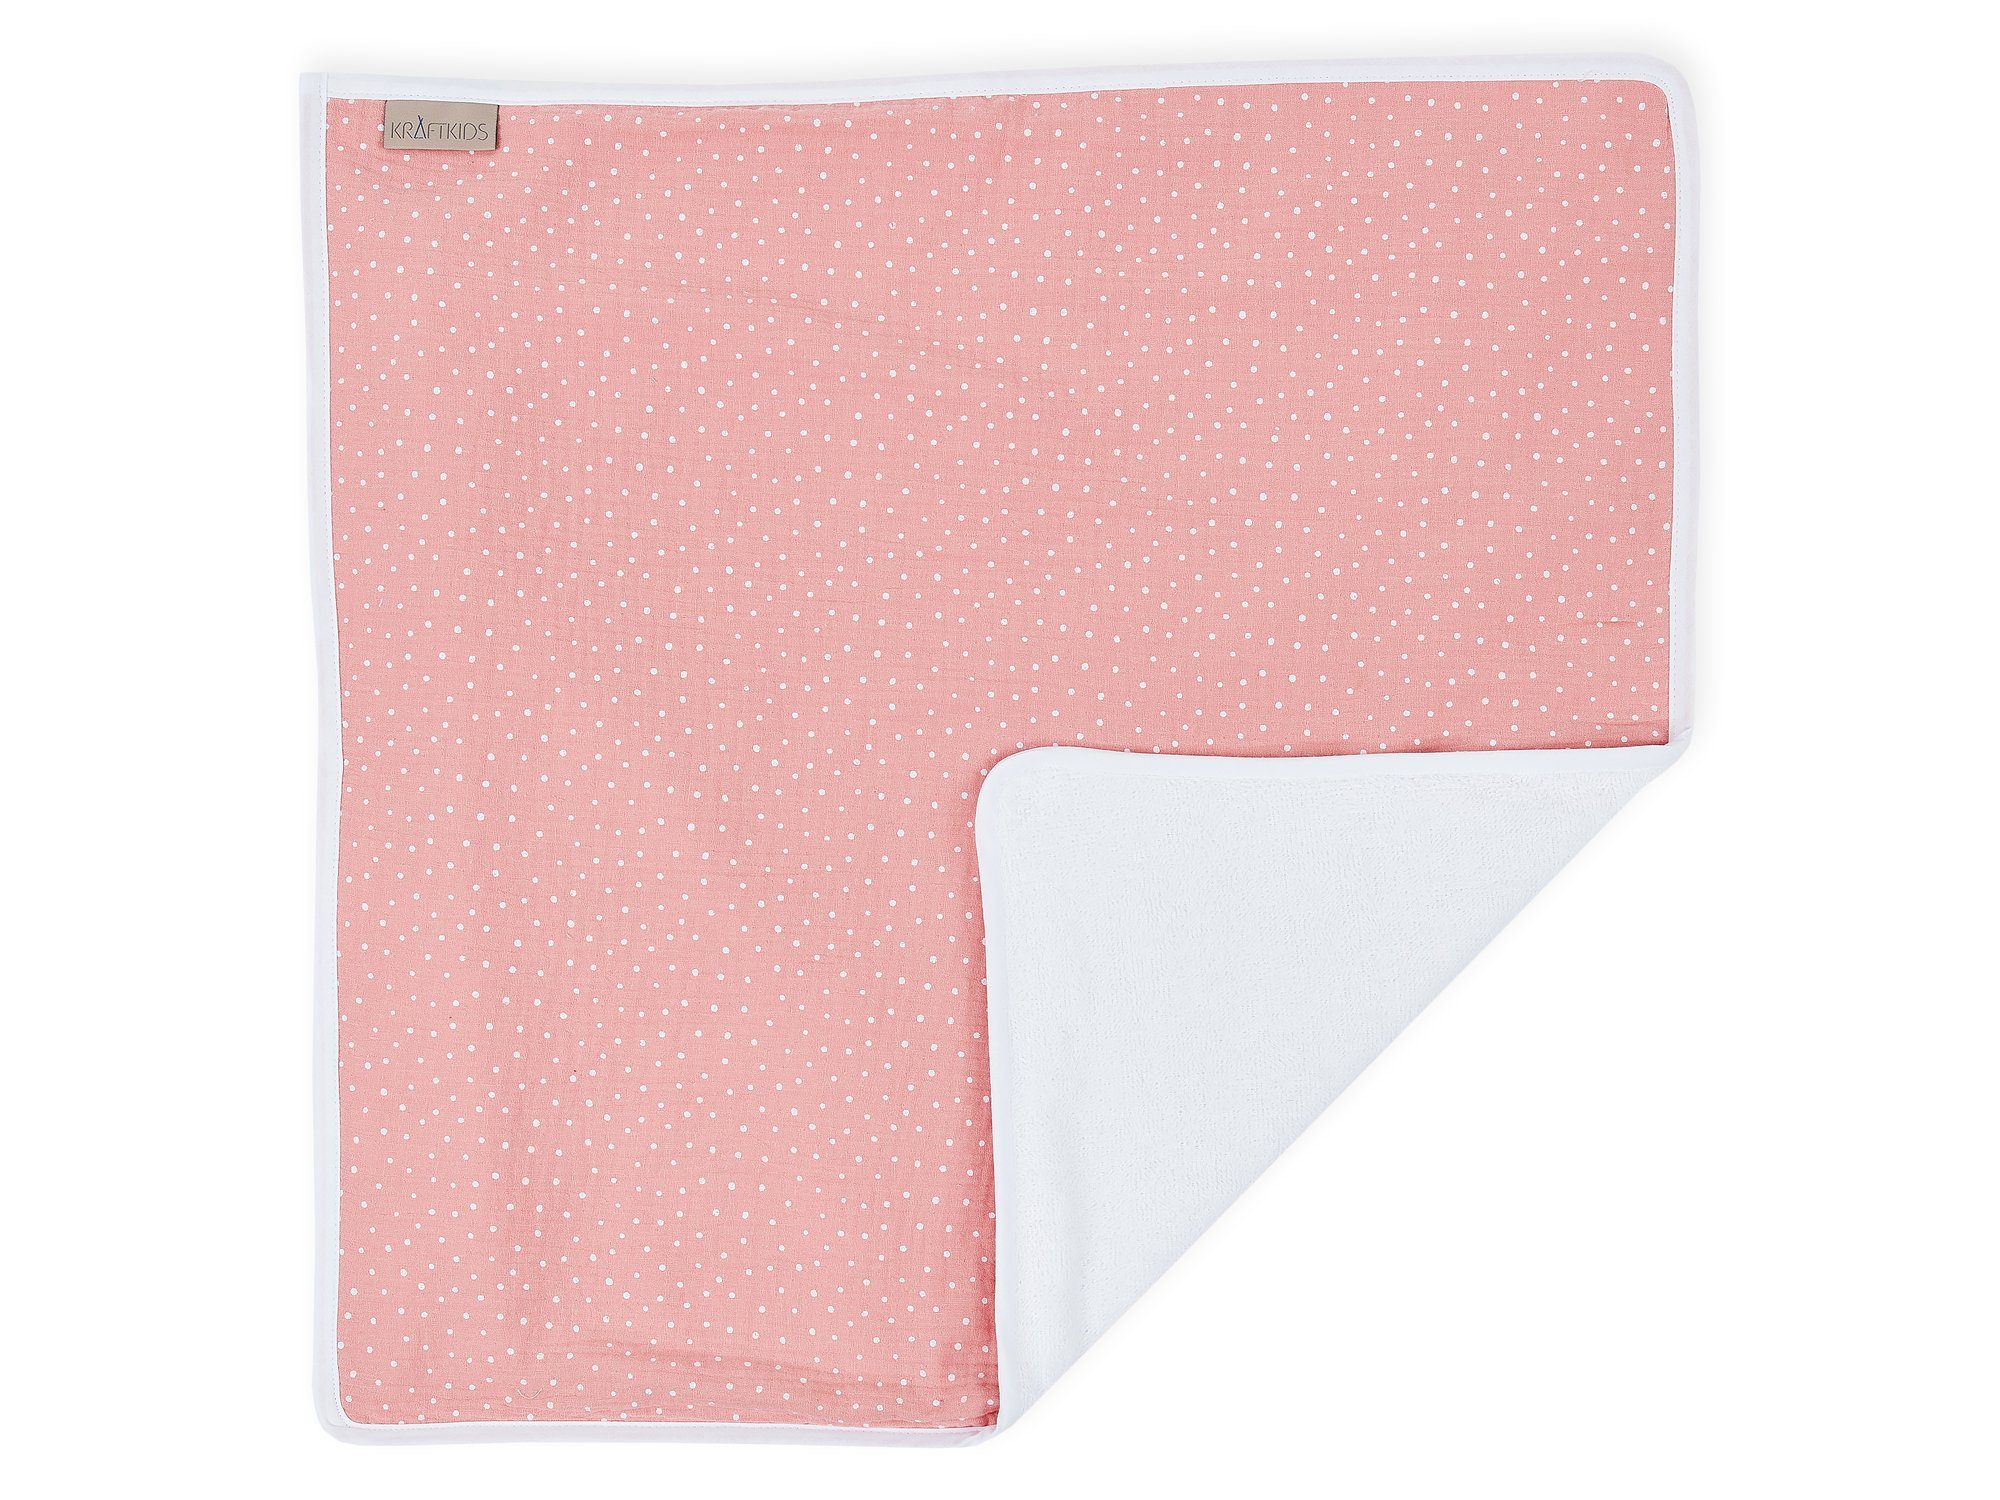 KraftKids wasserundurchlässig, Punkte, rosa Musselin Wickelauflage aus für Baumwolle, faltbar Innen 100% Unterwegs auch Wickelunterlage Stoffsichten 3